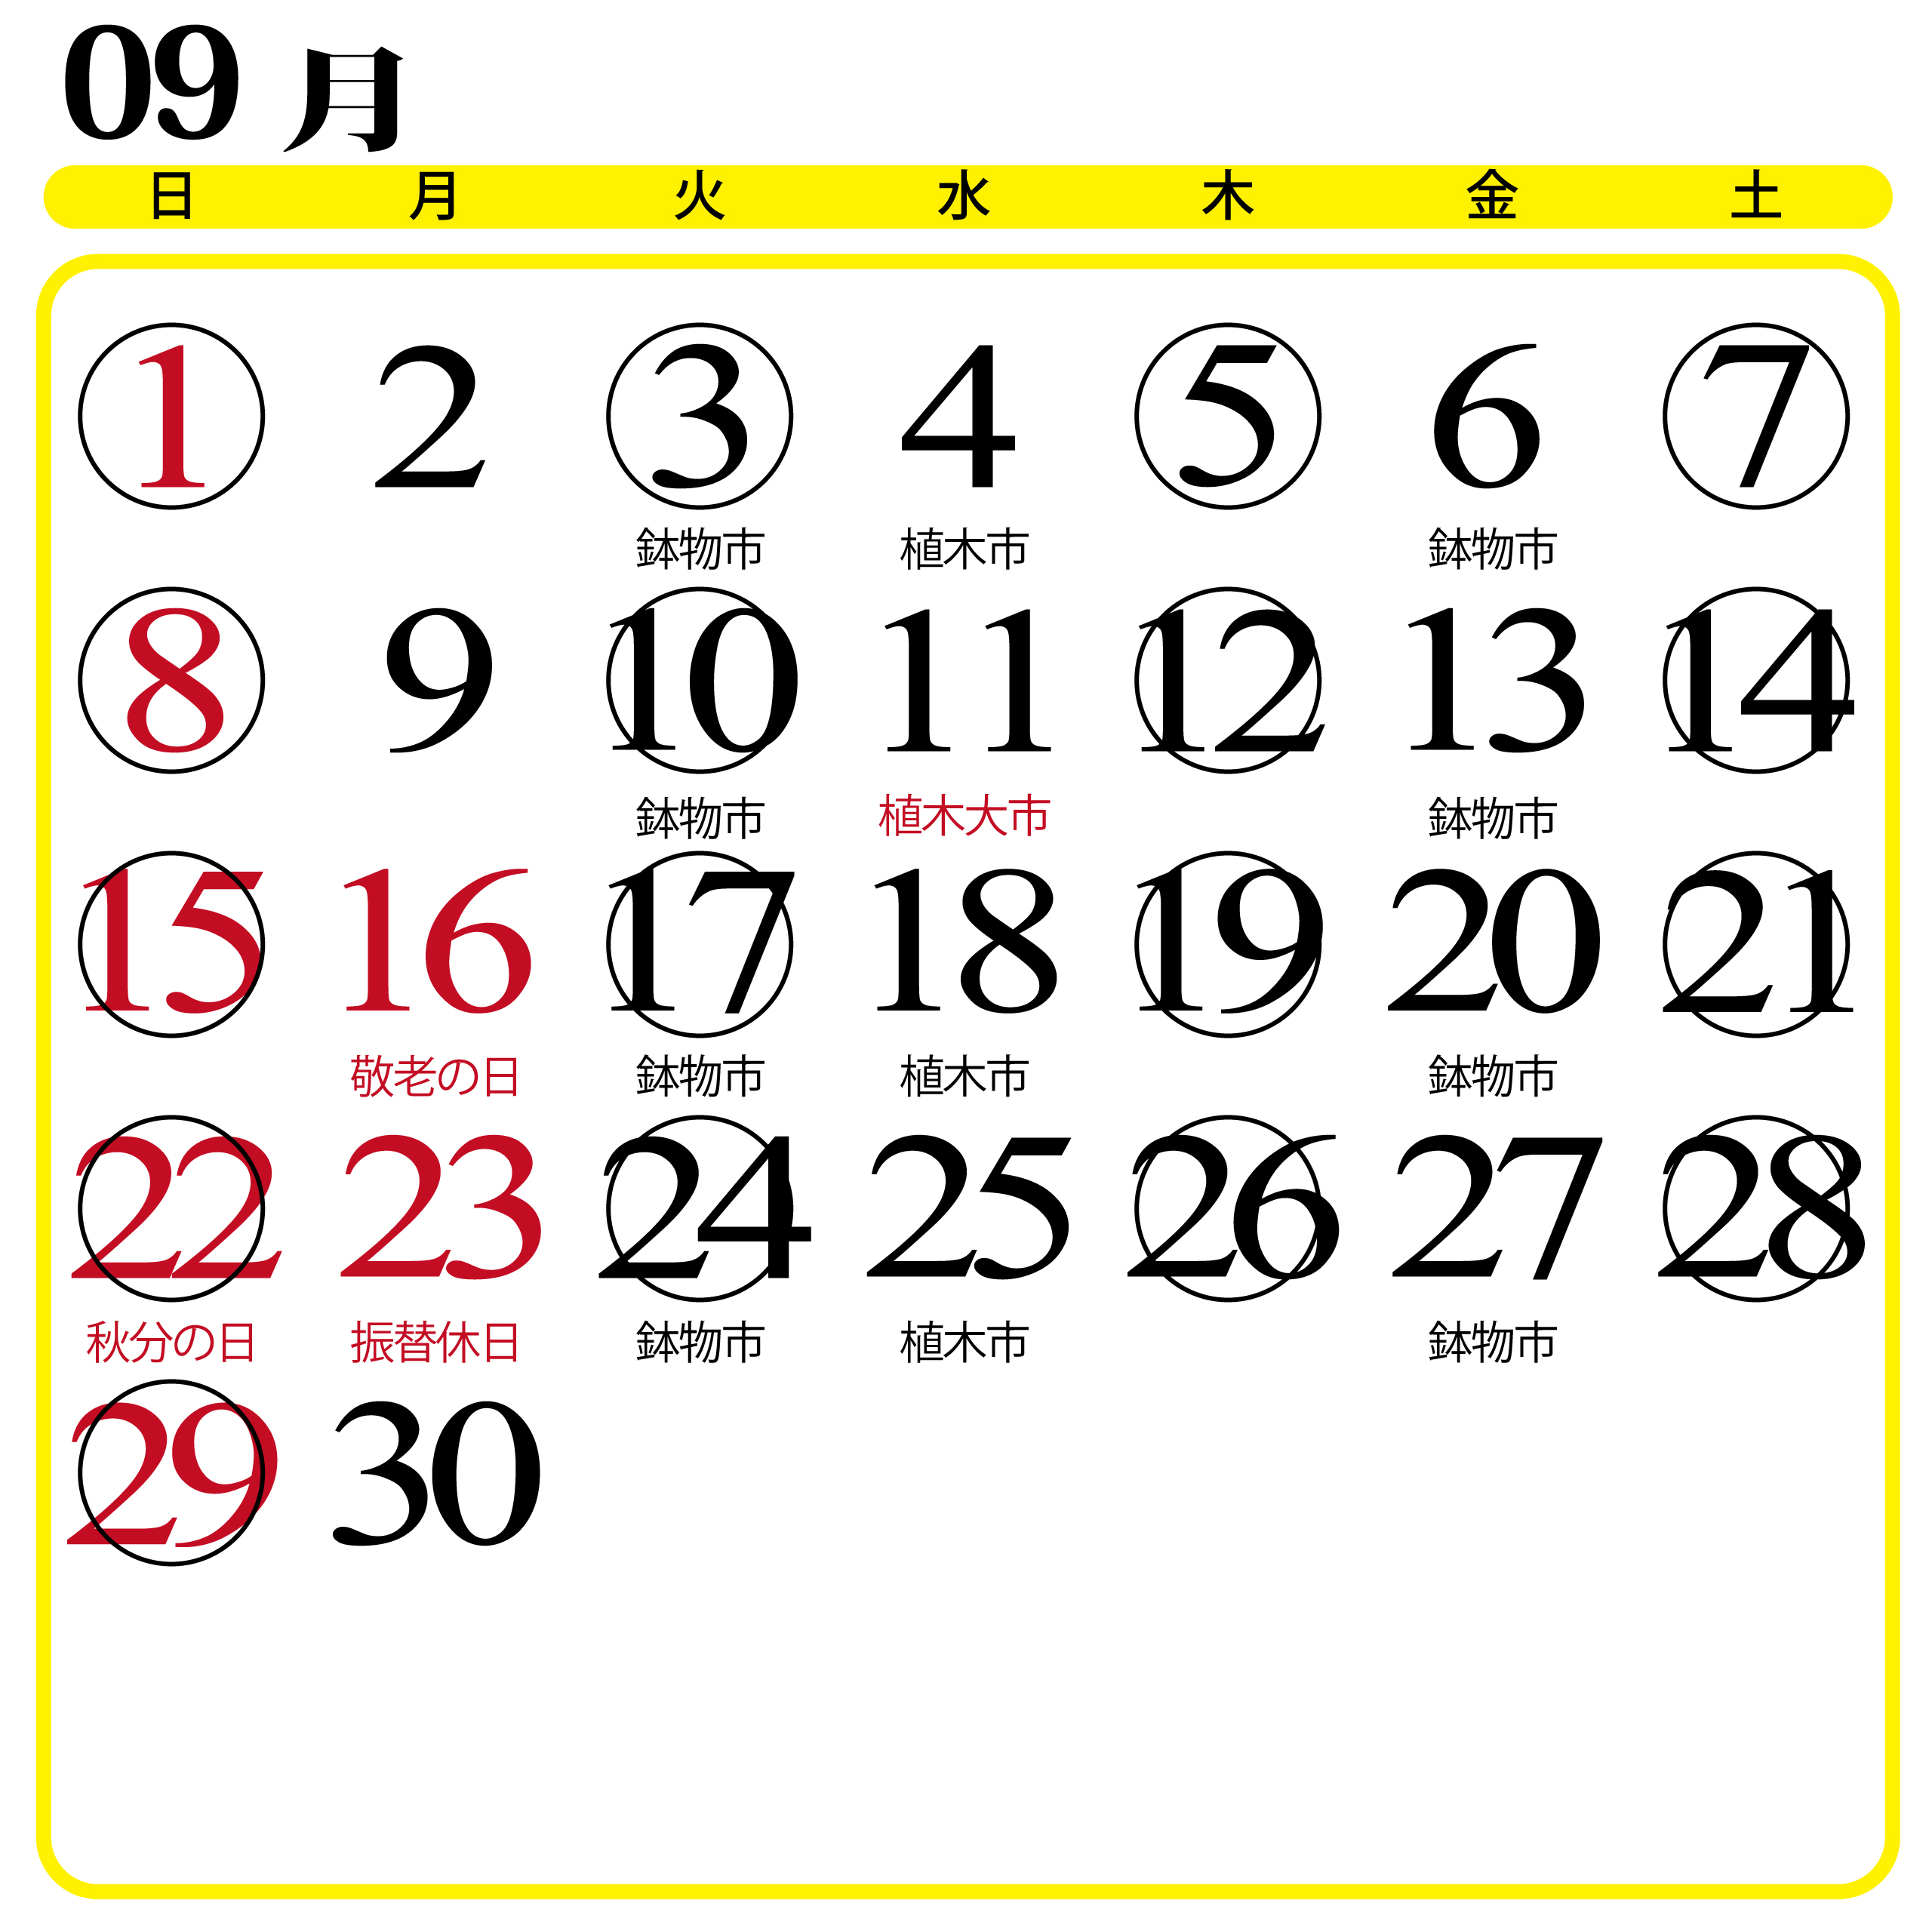 カレンダー画像202309